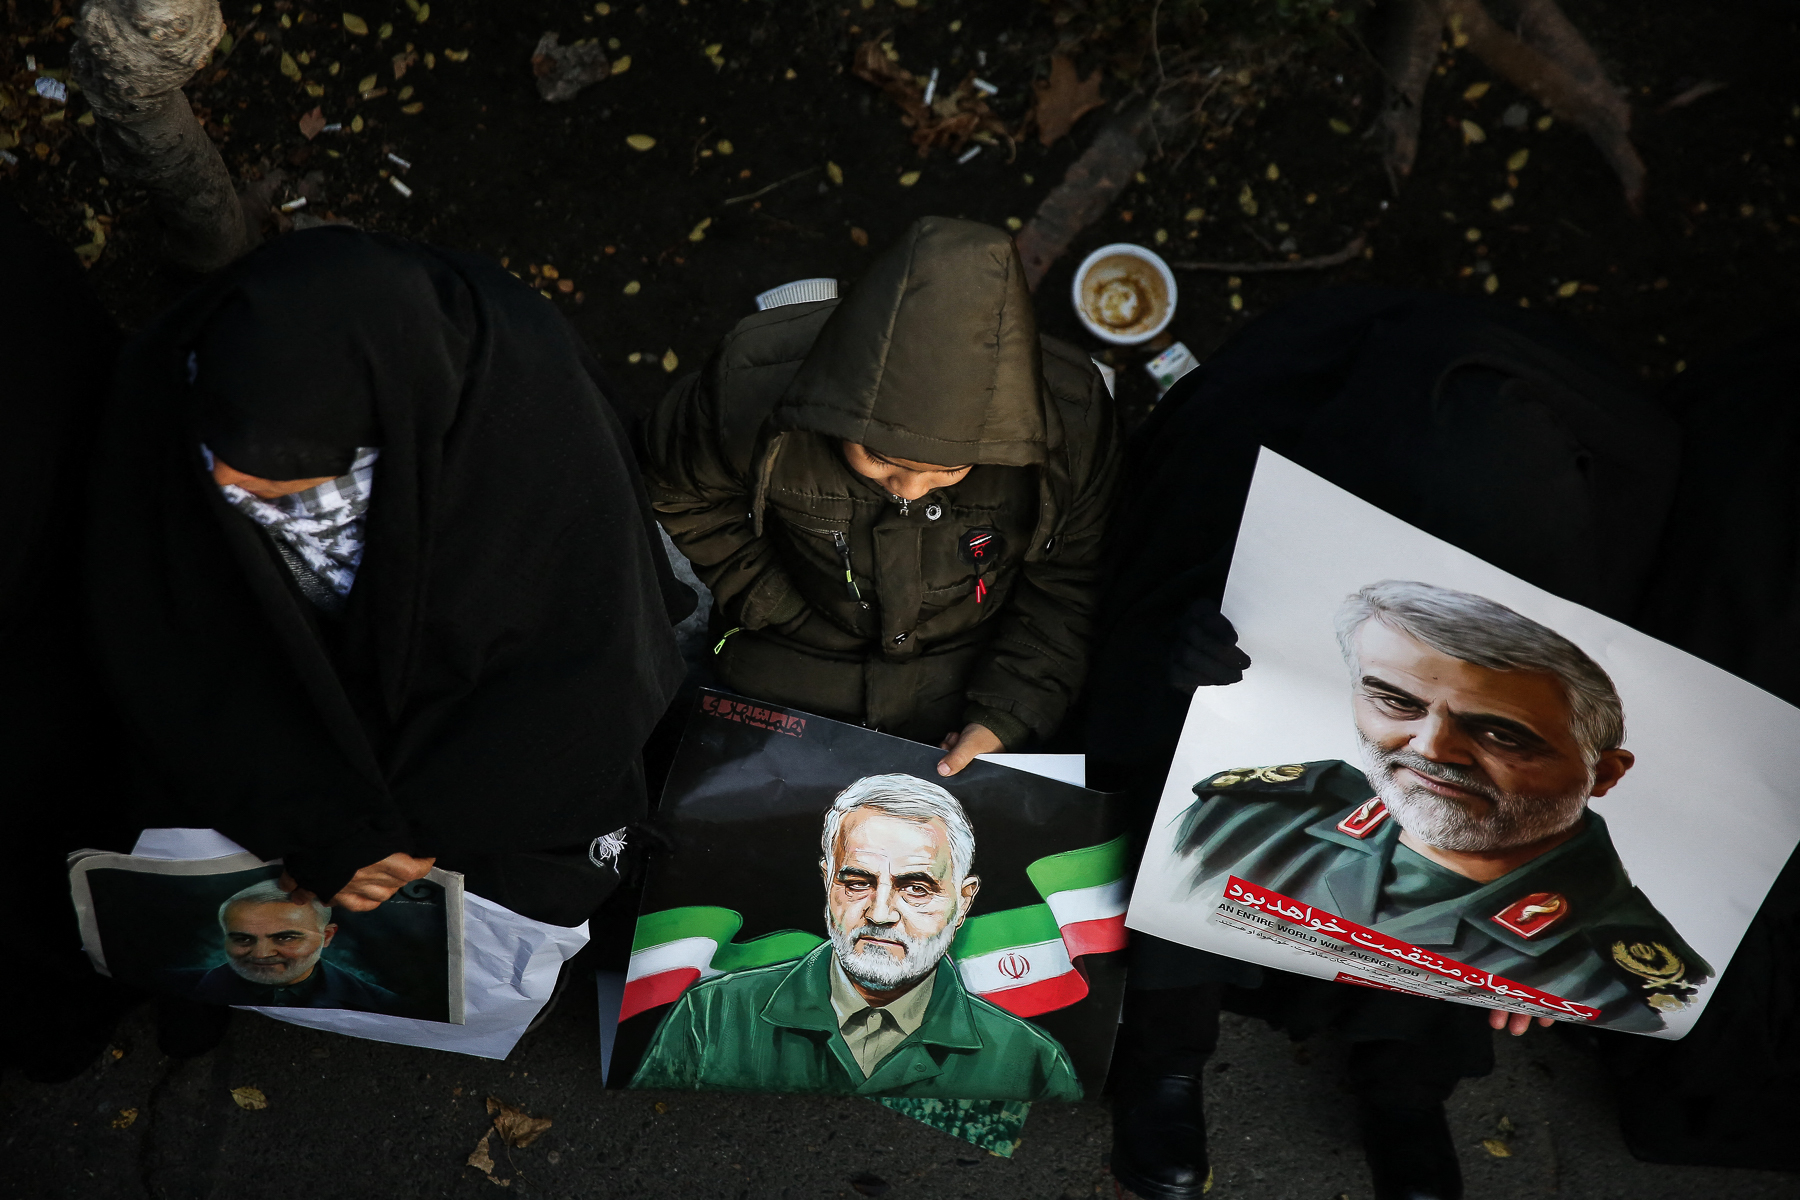 94 amerikai állampolgárt vádol Irán a Forradalmi Gárda vezetőjének meggyilkolásával, köztük van Donald Trump is